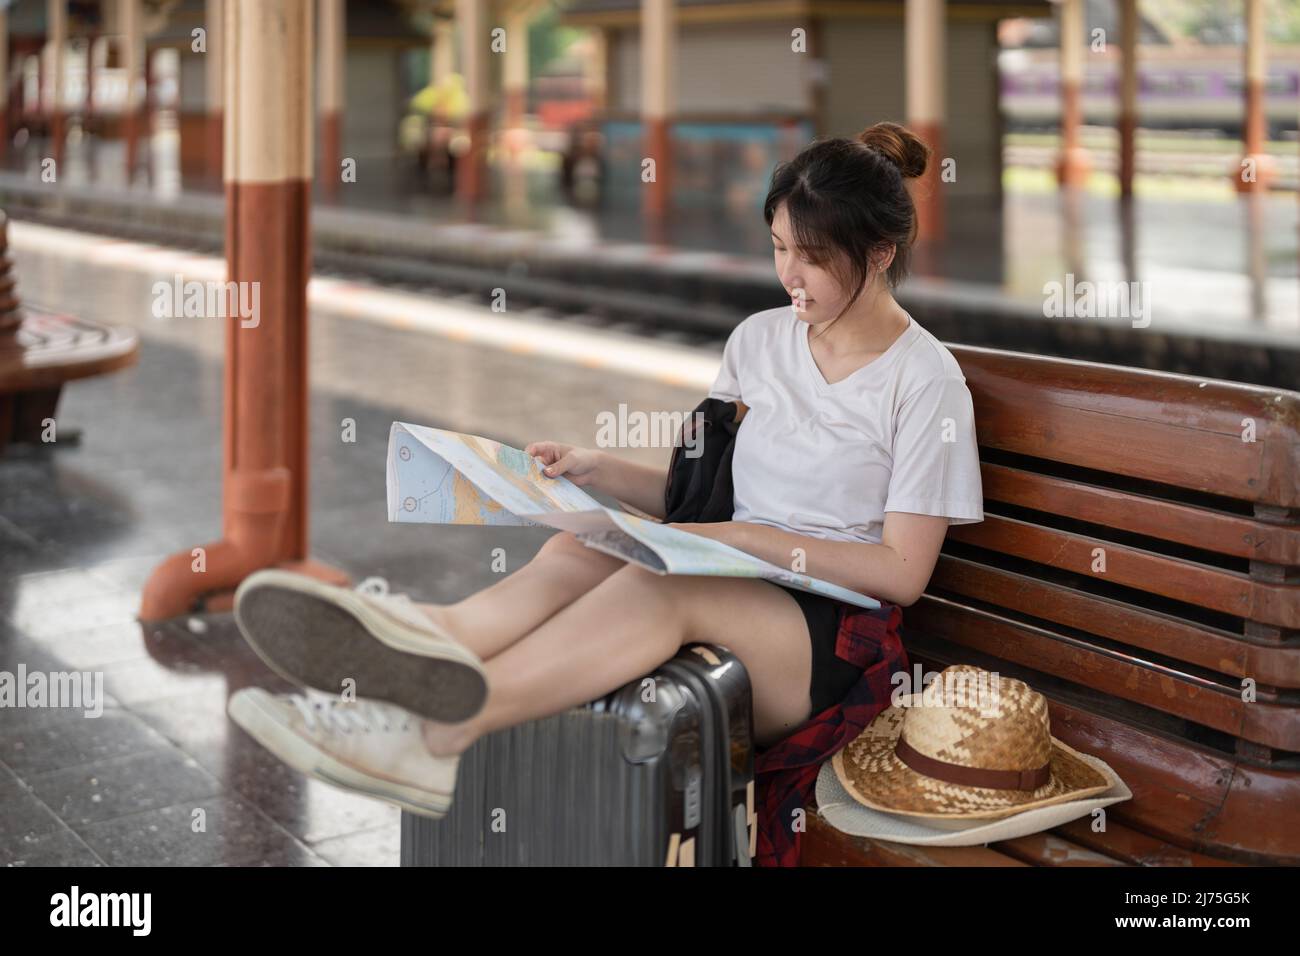 Bonne jeune femme asiatique voyageur ou routard à l'aide de la carte Choisissez où voyager avec des bagages à la gare, concept de voyage de vacances d'été Banque D'Images